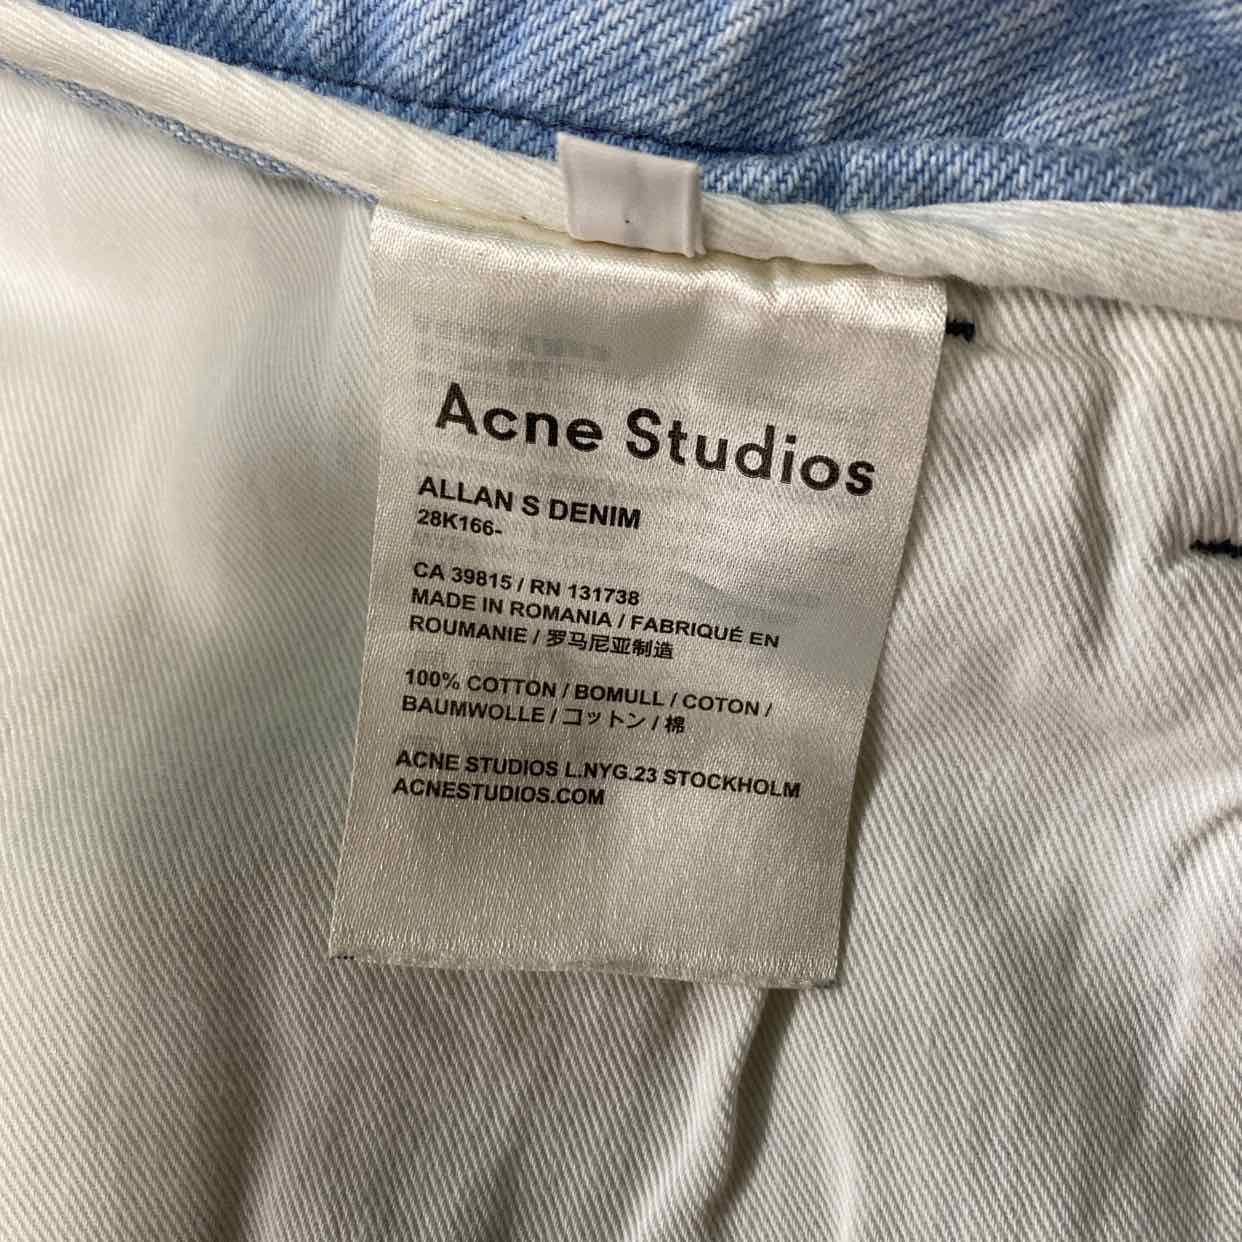 Acne Studios Shorts &quot;DENIM&quot; Light Blue Used Size 48